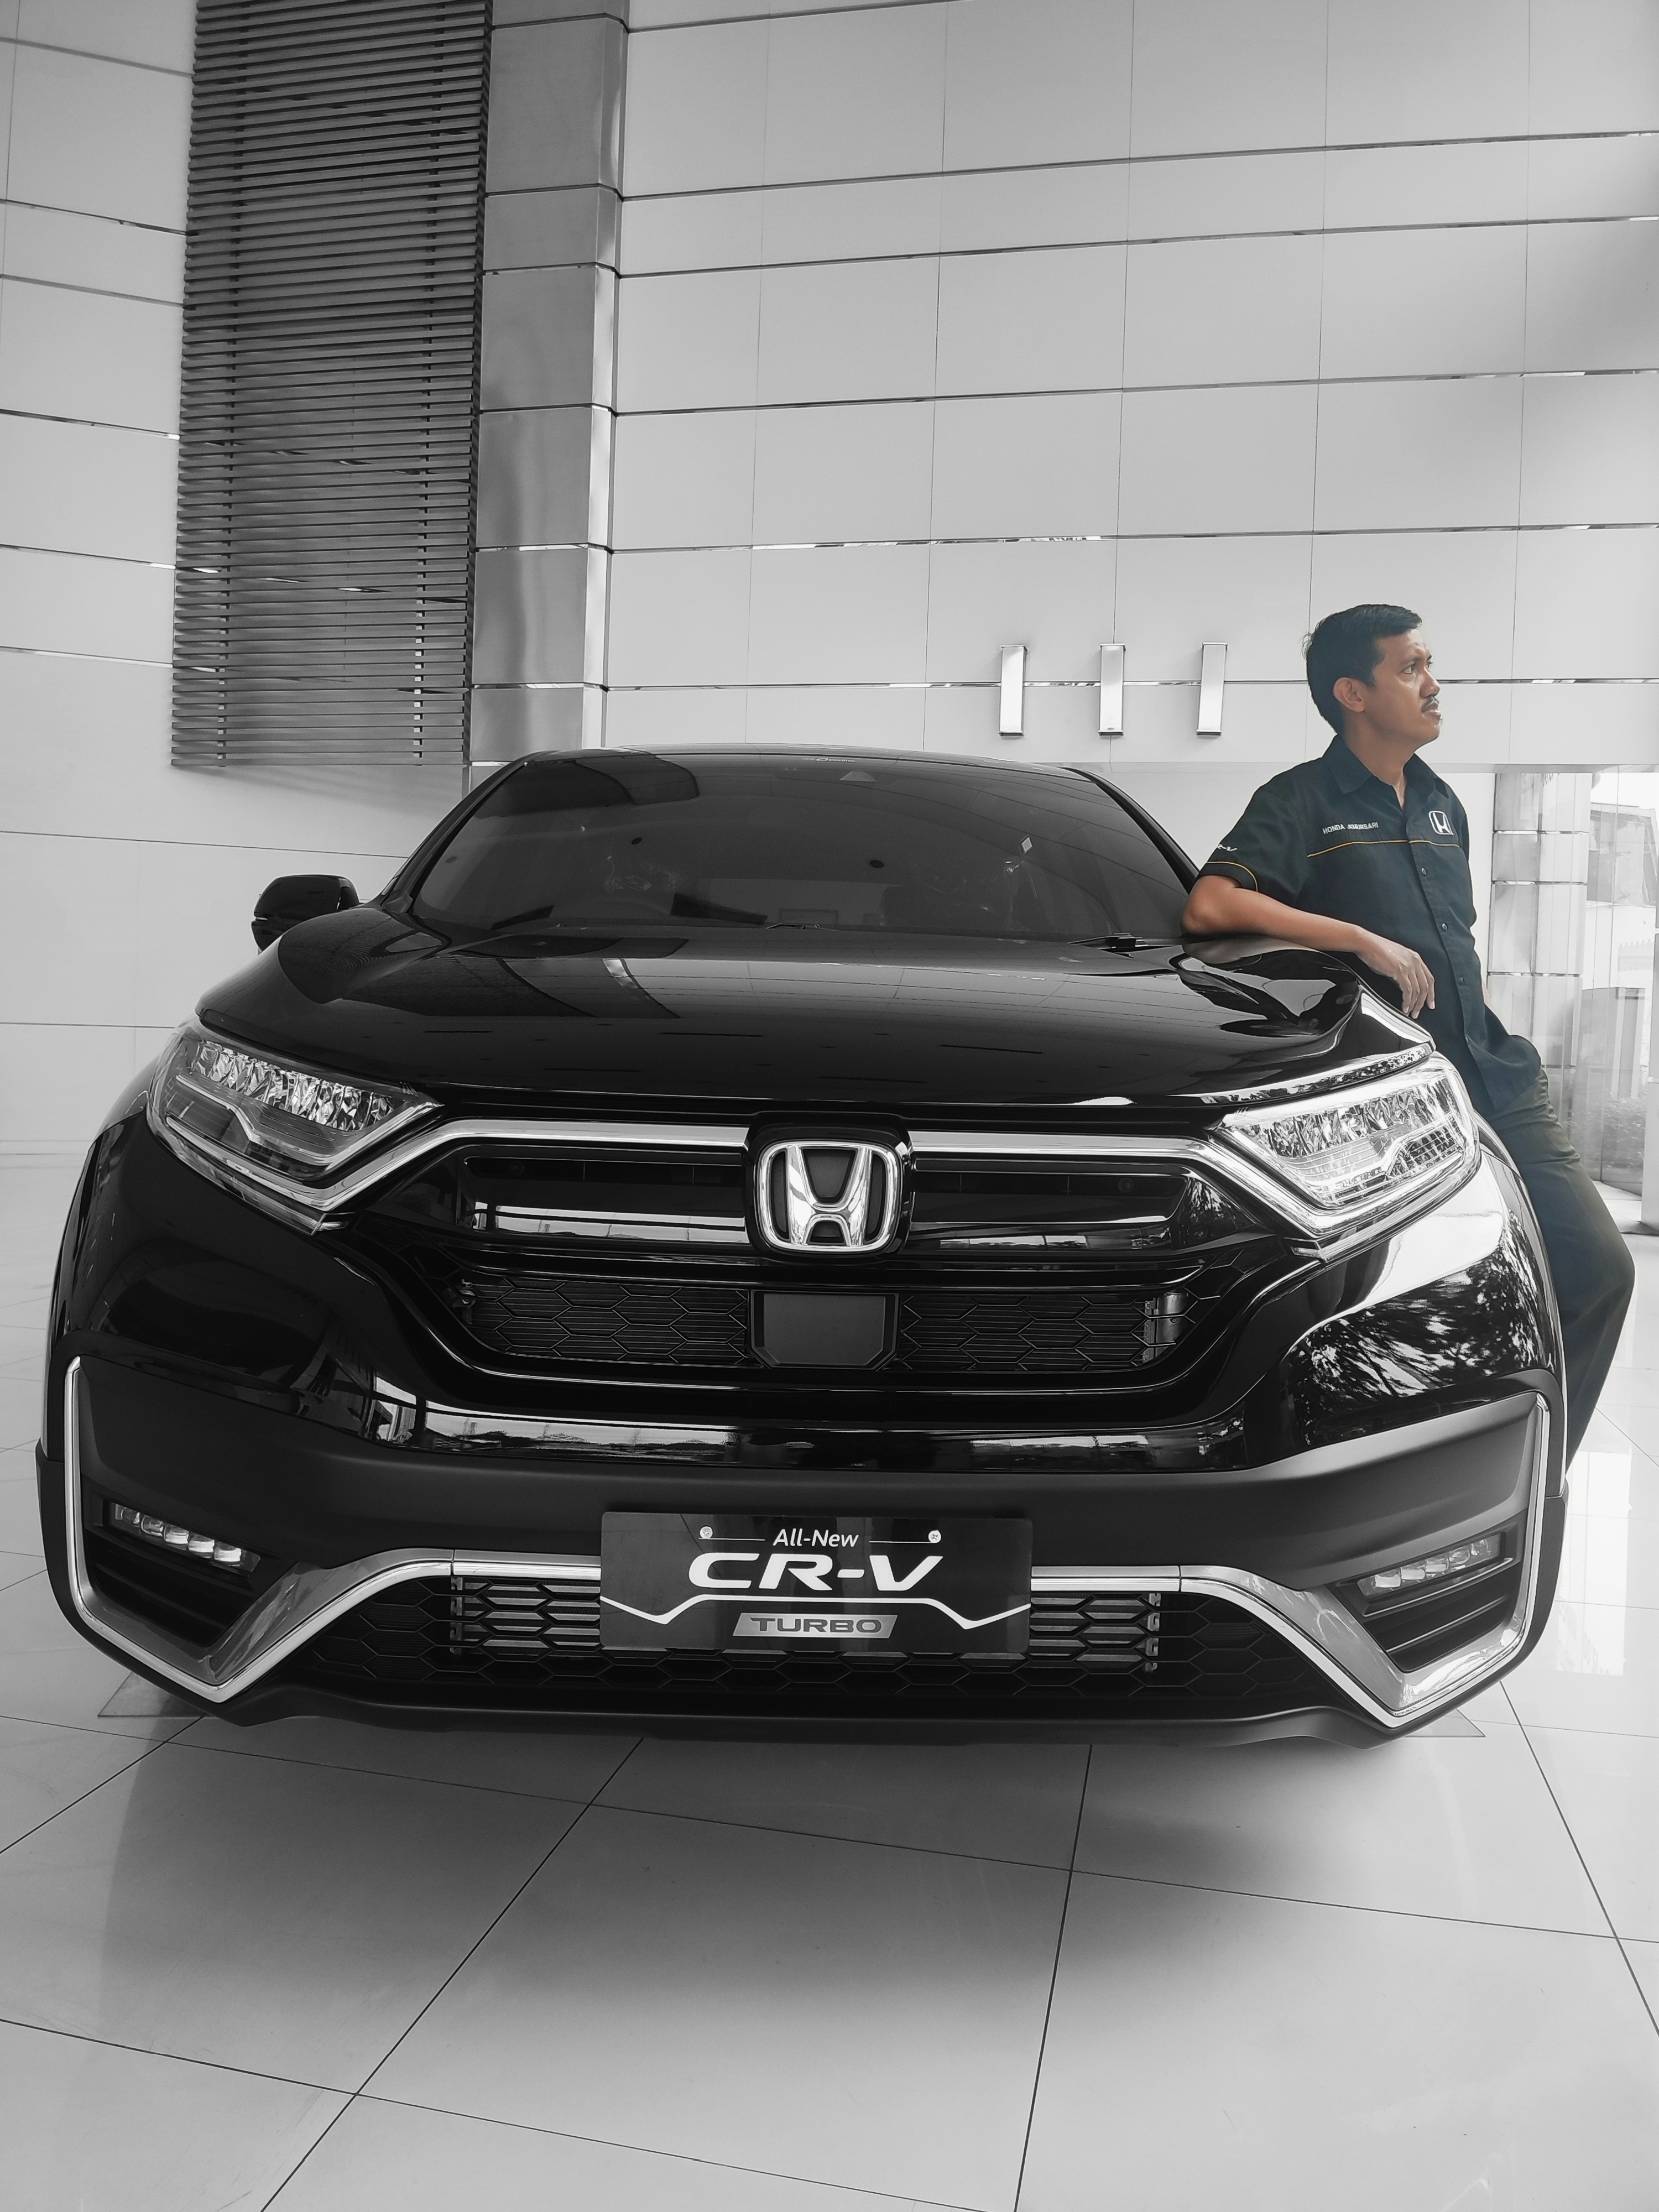 Honda Surabaya | Dapatkan Harga, Promo & Kredit Honda Terbaik